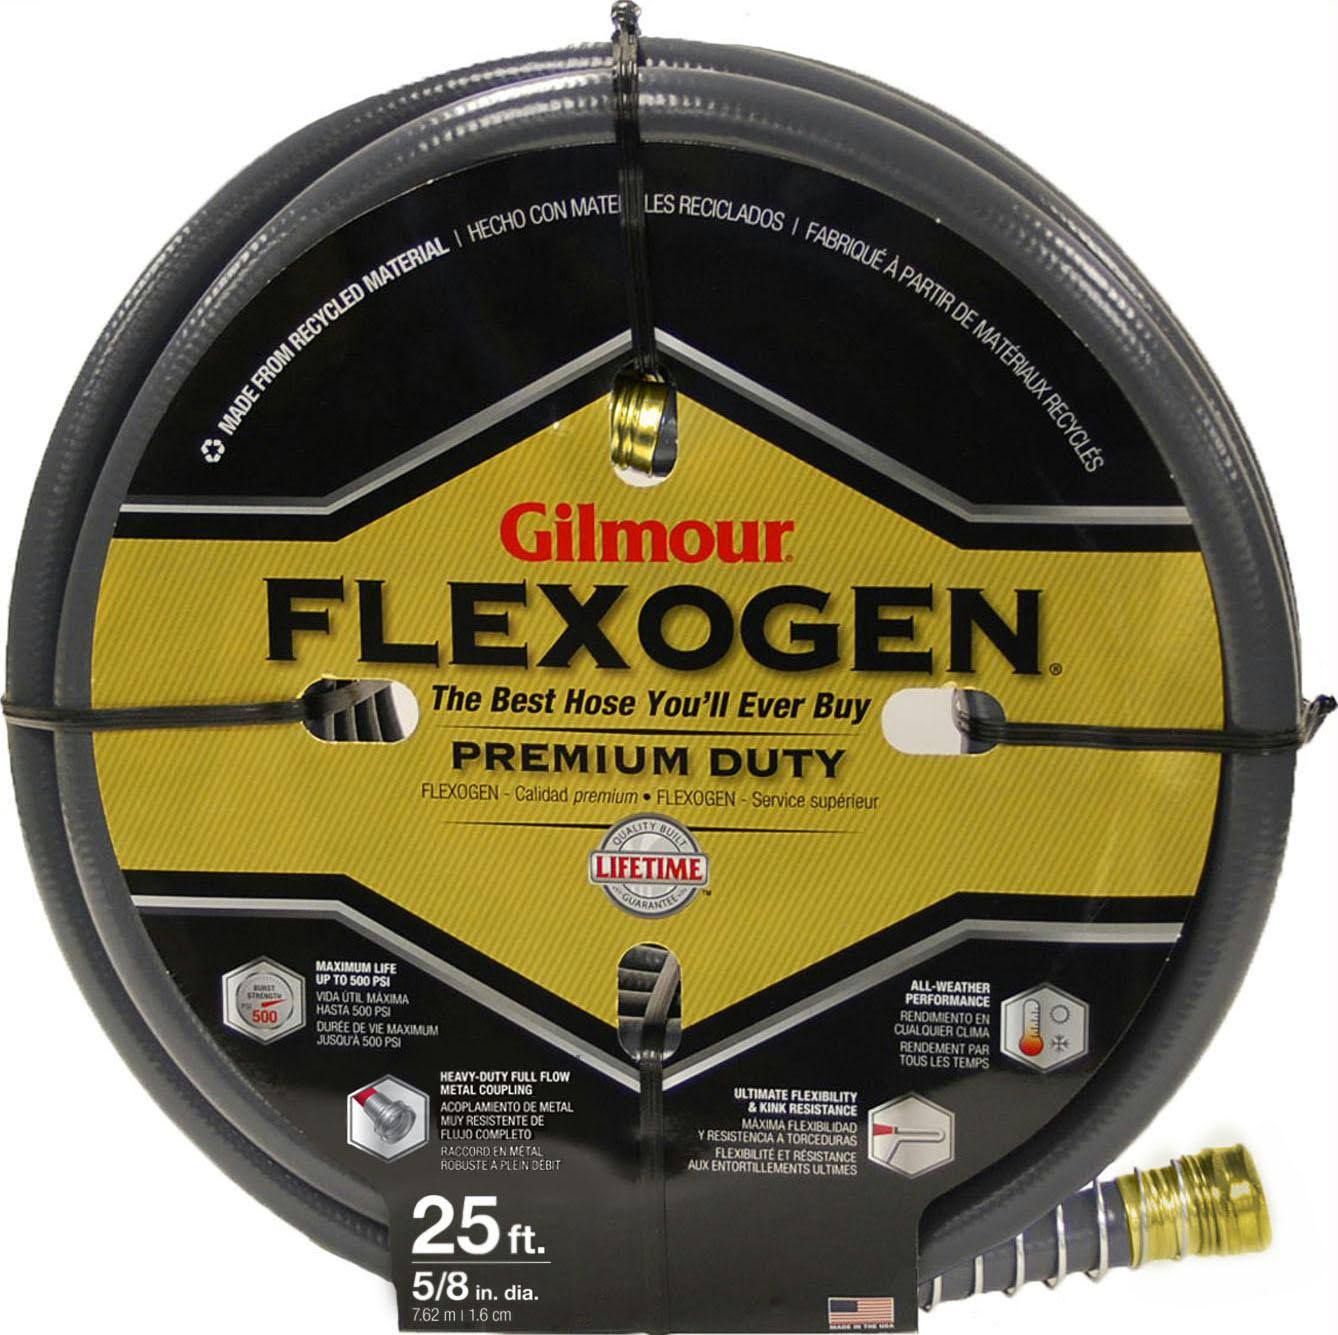 Gilmour Flexogen Garden Hose - 25' x 5/8", 8 ply